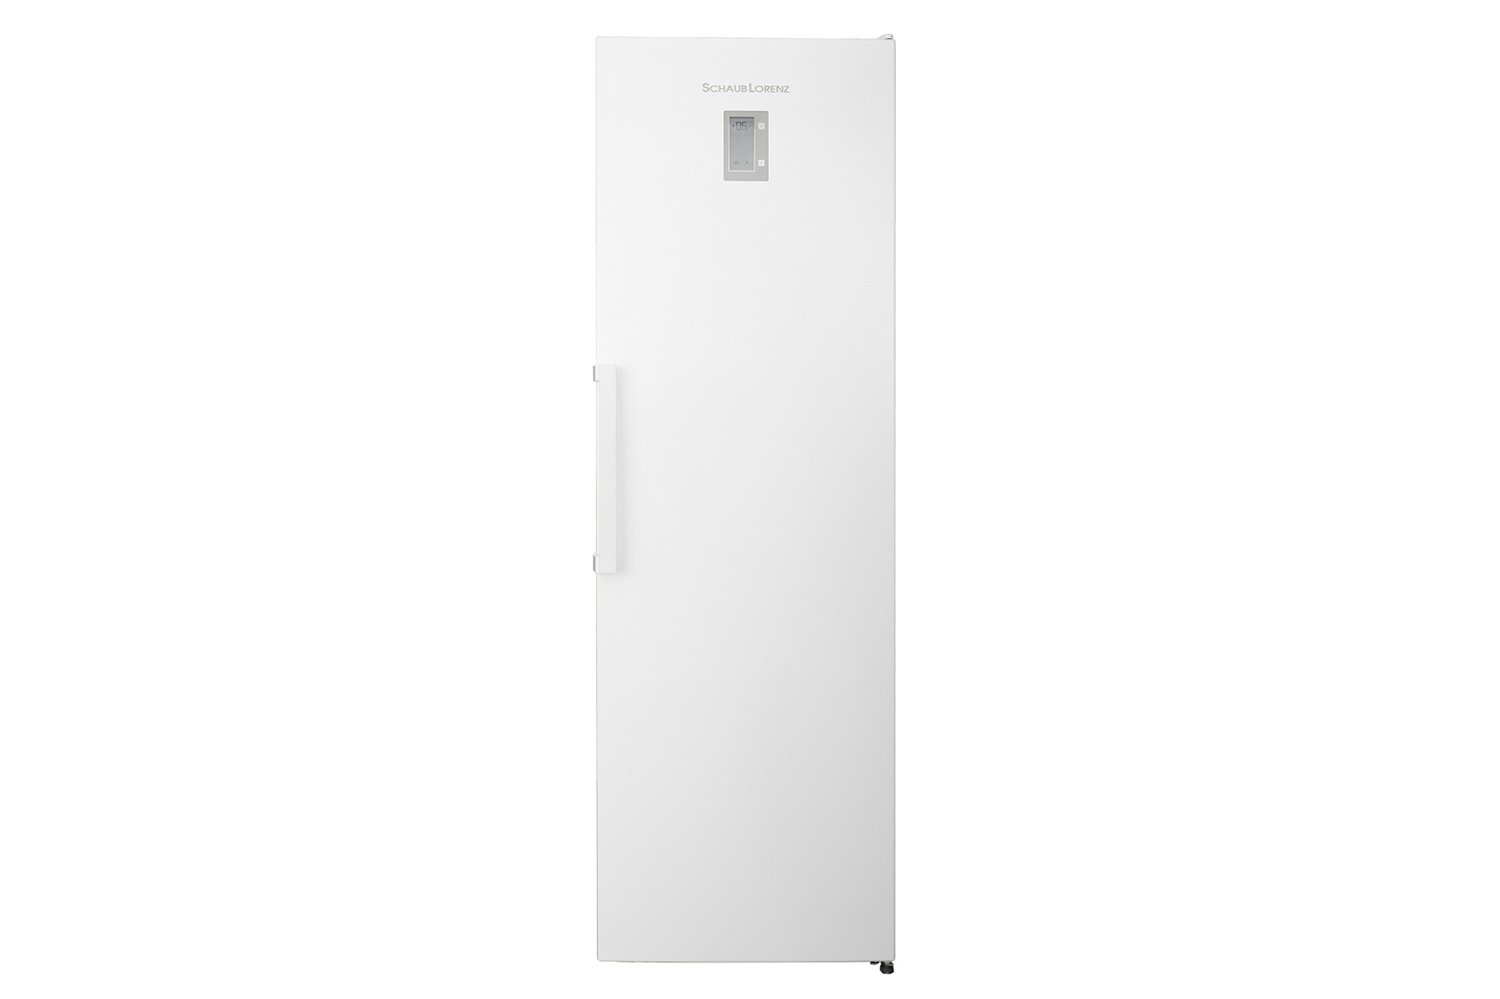 Холодильник SCHAUB LORENZ SLU S305WE 80548673